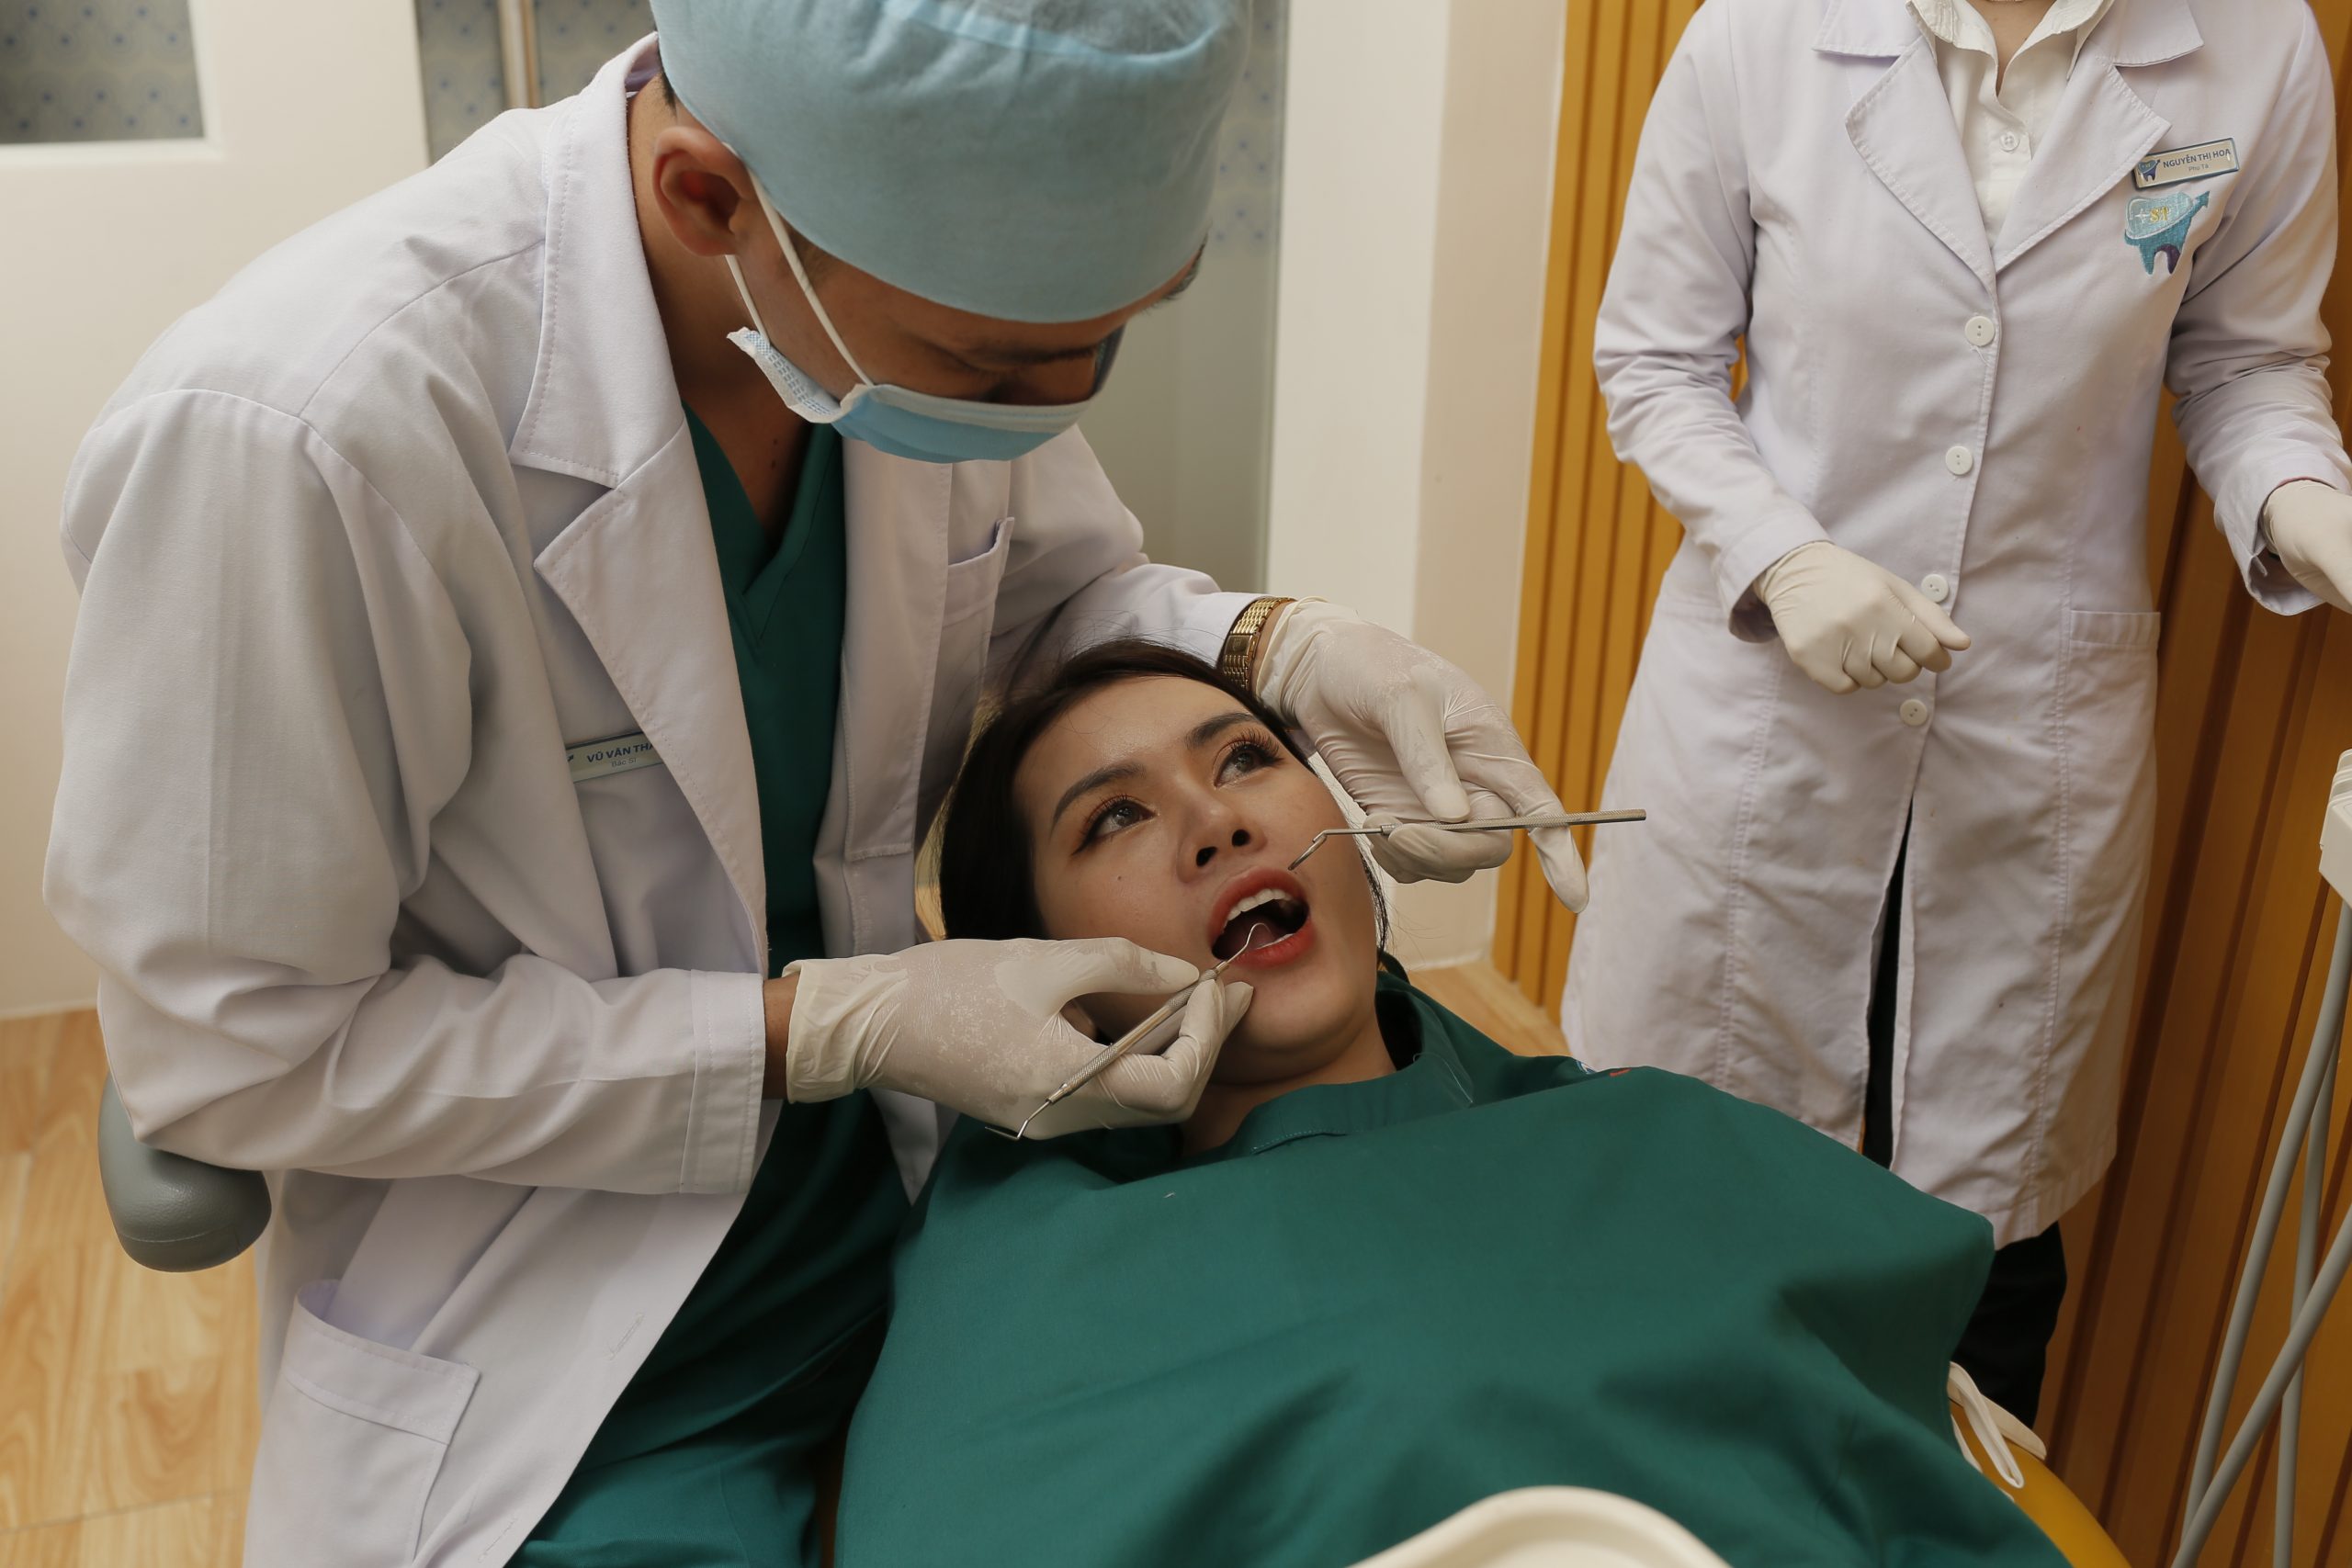 Nếu răng bị mẻ, vỡ, bạn nên đến gặp bác sĩ để được tư vấn biện pháp phù hợp